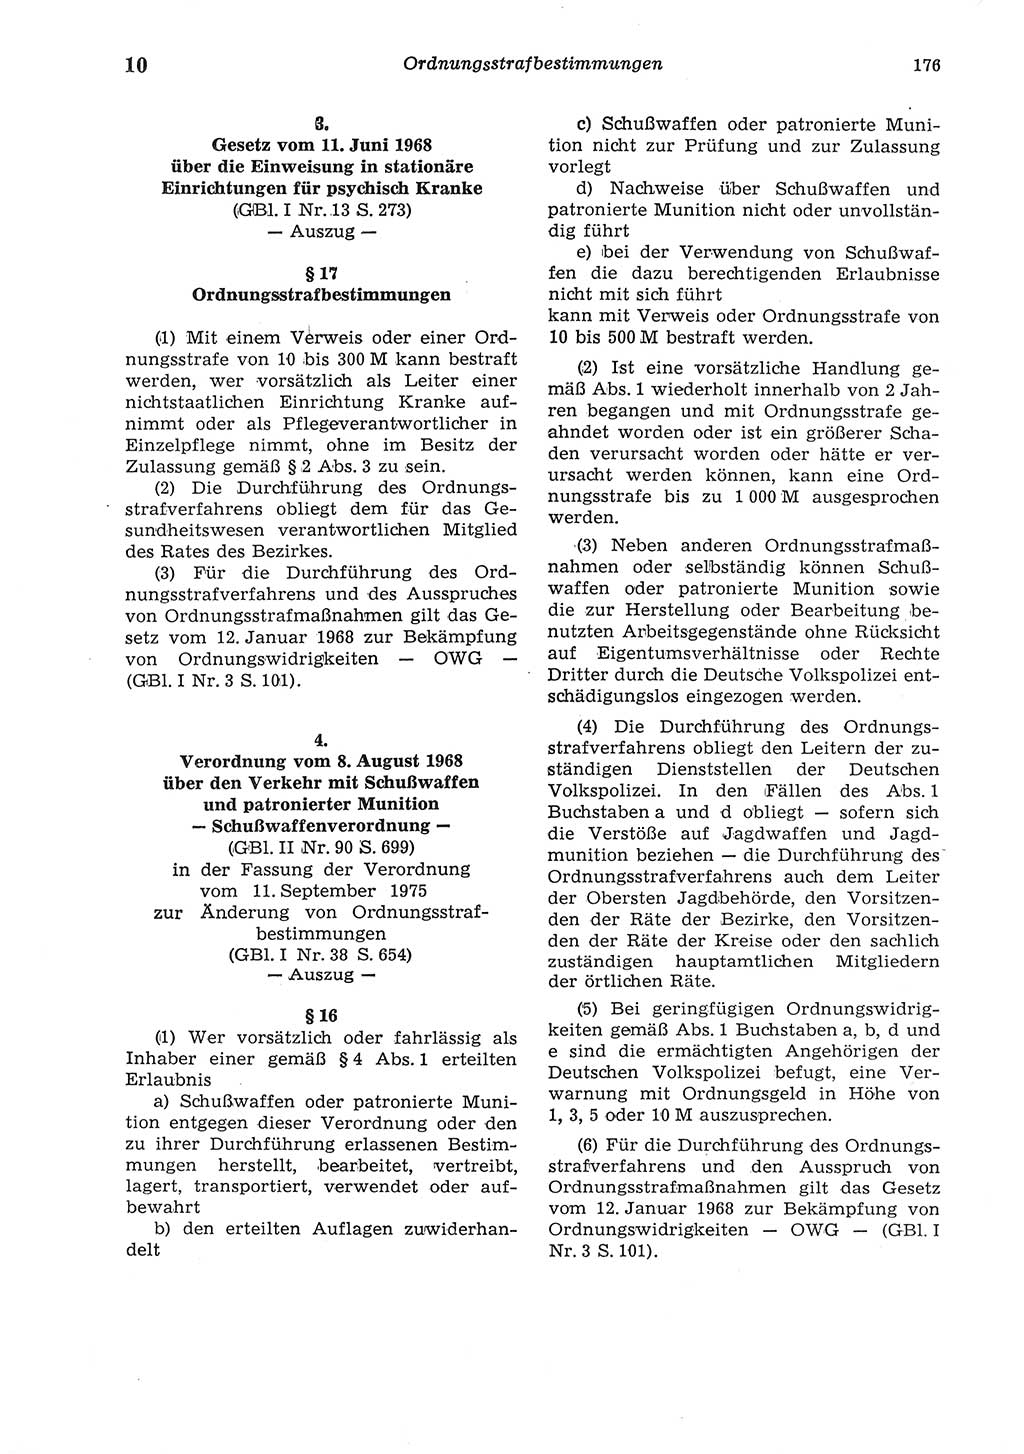 Strafgesetzbuch (StGB) der Deutschen Demokratischen Republik (DDR) und angrenzende Gesetze und Bestimmungen 1975, Seite 176 (StGB DDR Ges. Best. 1975, S. 176)